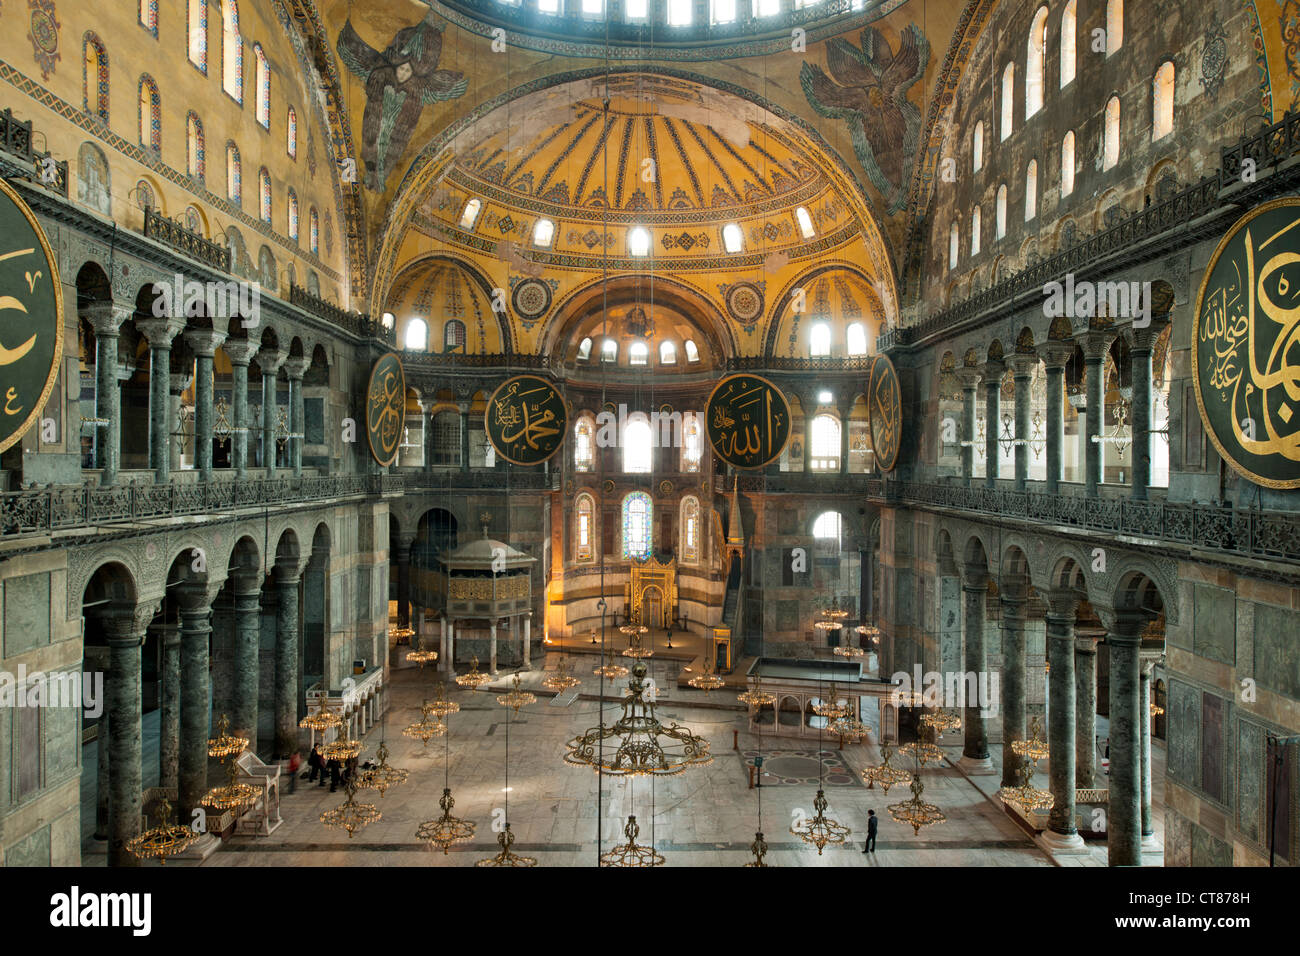 Türkei, Istanbul, Sultanahmet, Hagia Sophia oder Sophienkirche, eine ehemalige Kirche, spätere Moschee und heute ein Museum. Stockfoto